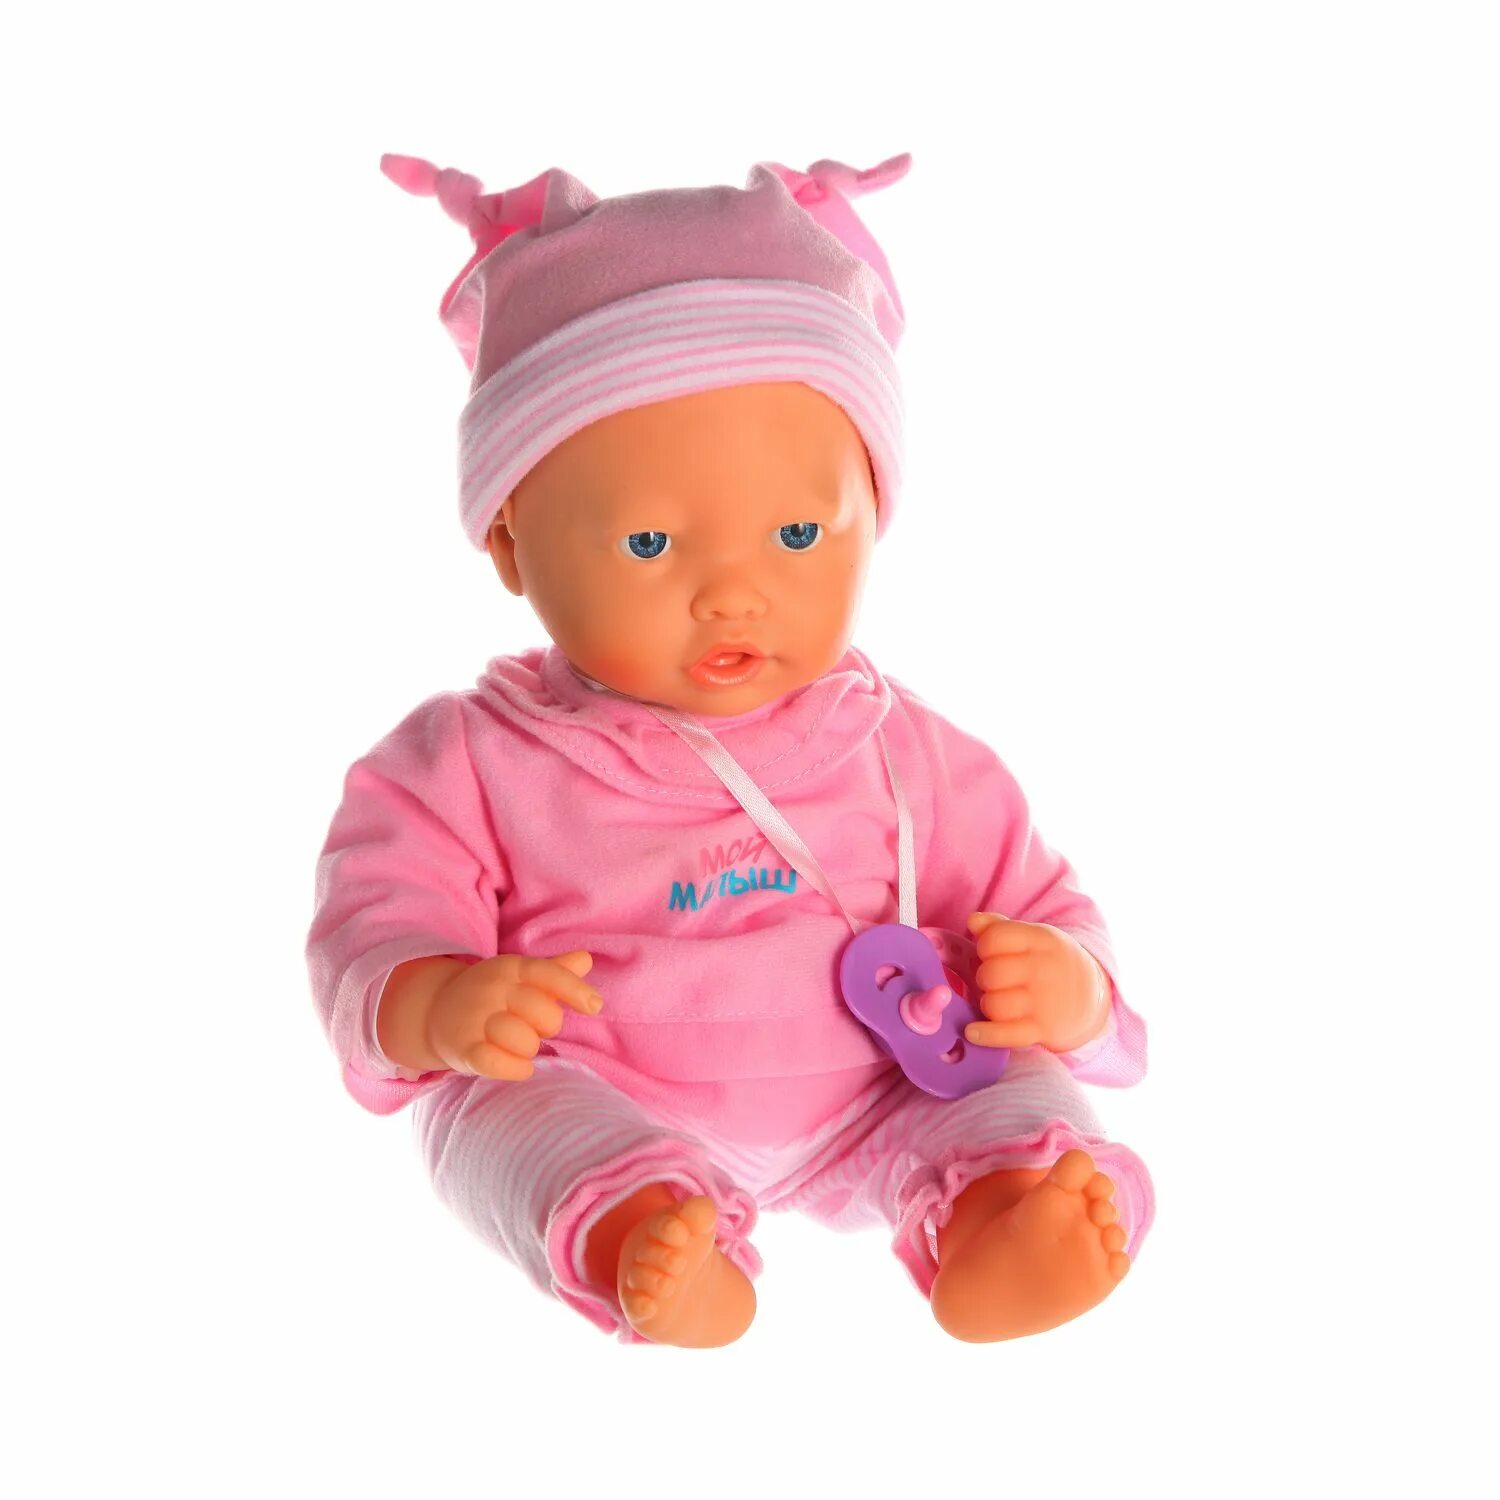 Мягконабивной пупс Mila 22 см. Toy Joy куклы мягконабивные. Пупс младенец. Пупс мягконабивной